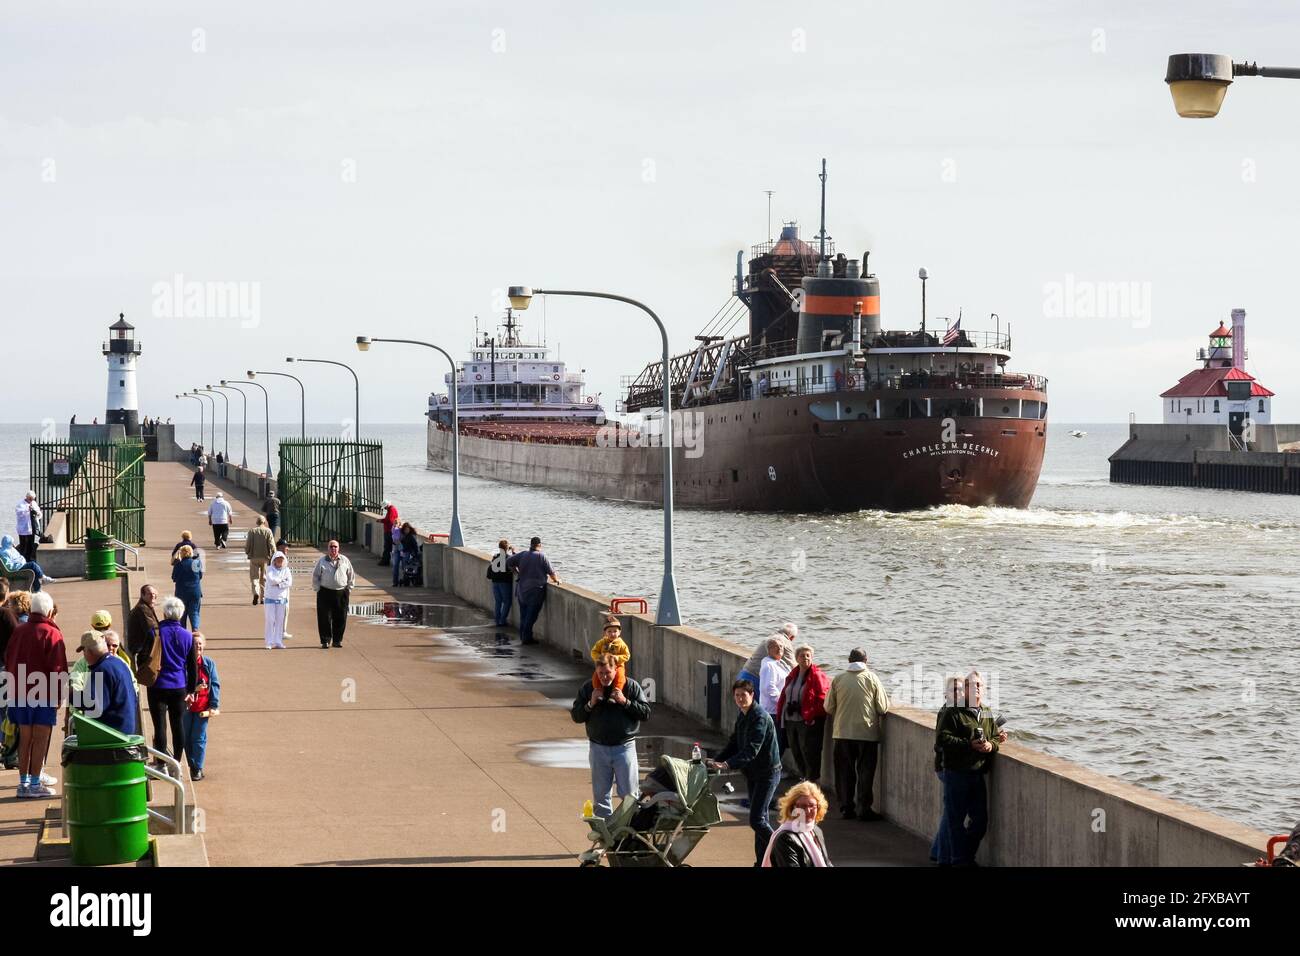 Duluth, Minnesota, Stati Uniti. I turisti godono della vista del Lago superiore e del portarinfuse Charles M. Beeghly che lascia il porto di Duluth. Foto Stock